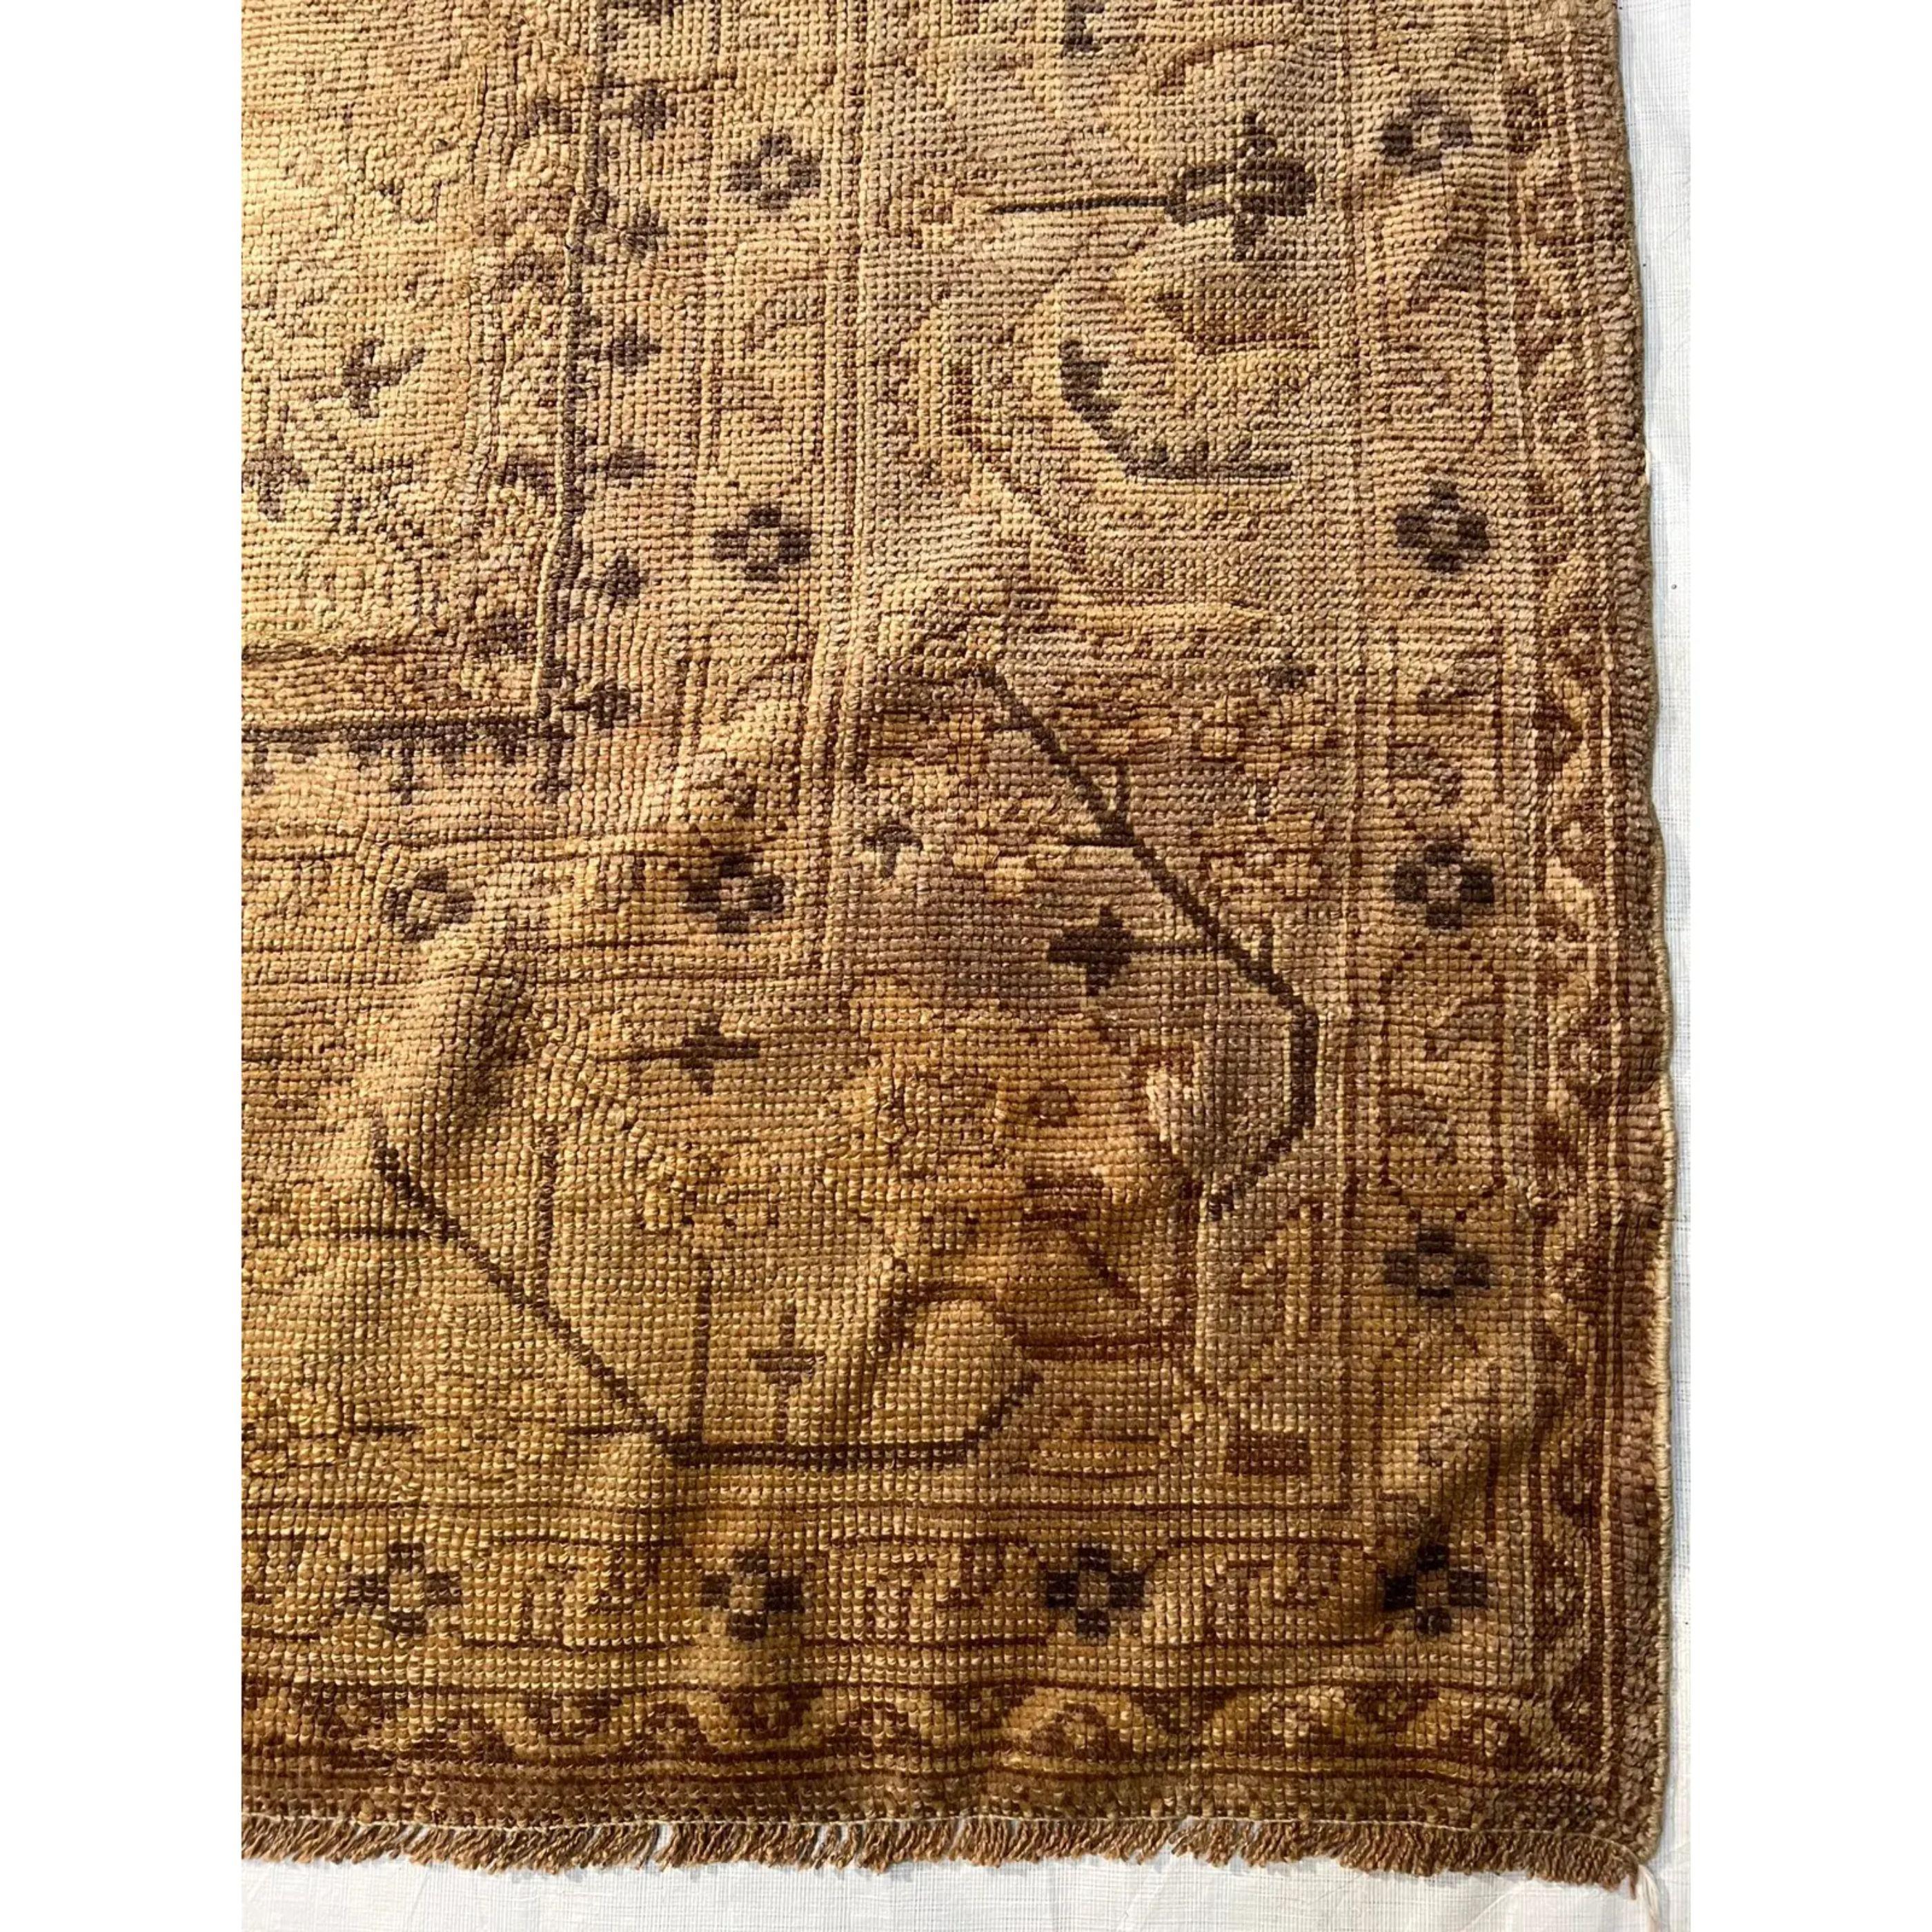 Les anciens tapis turcs Oushak sont tissés dans l'ouest de la Turquie depuis le début de la période ottomane. Les historiens leur attribuent la plupart des grands chefs-d'œuvre du tissage des tapis turcs du XVe au XVIIe siècle. Lorsque les choses